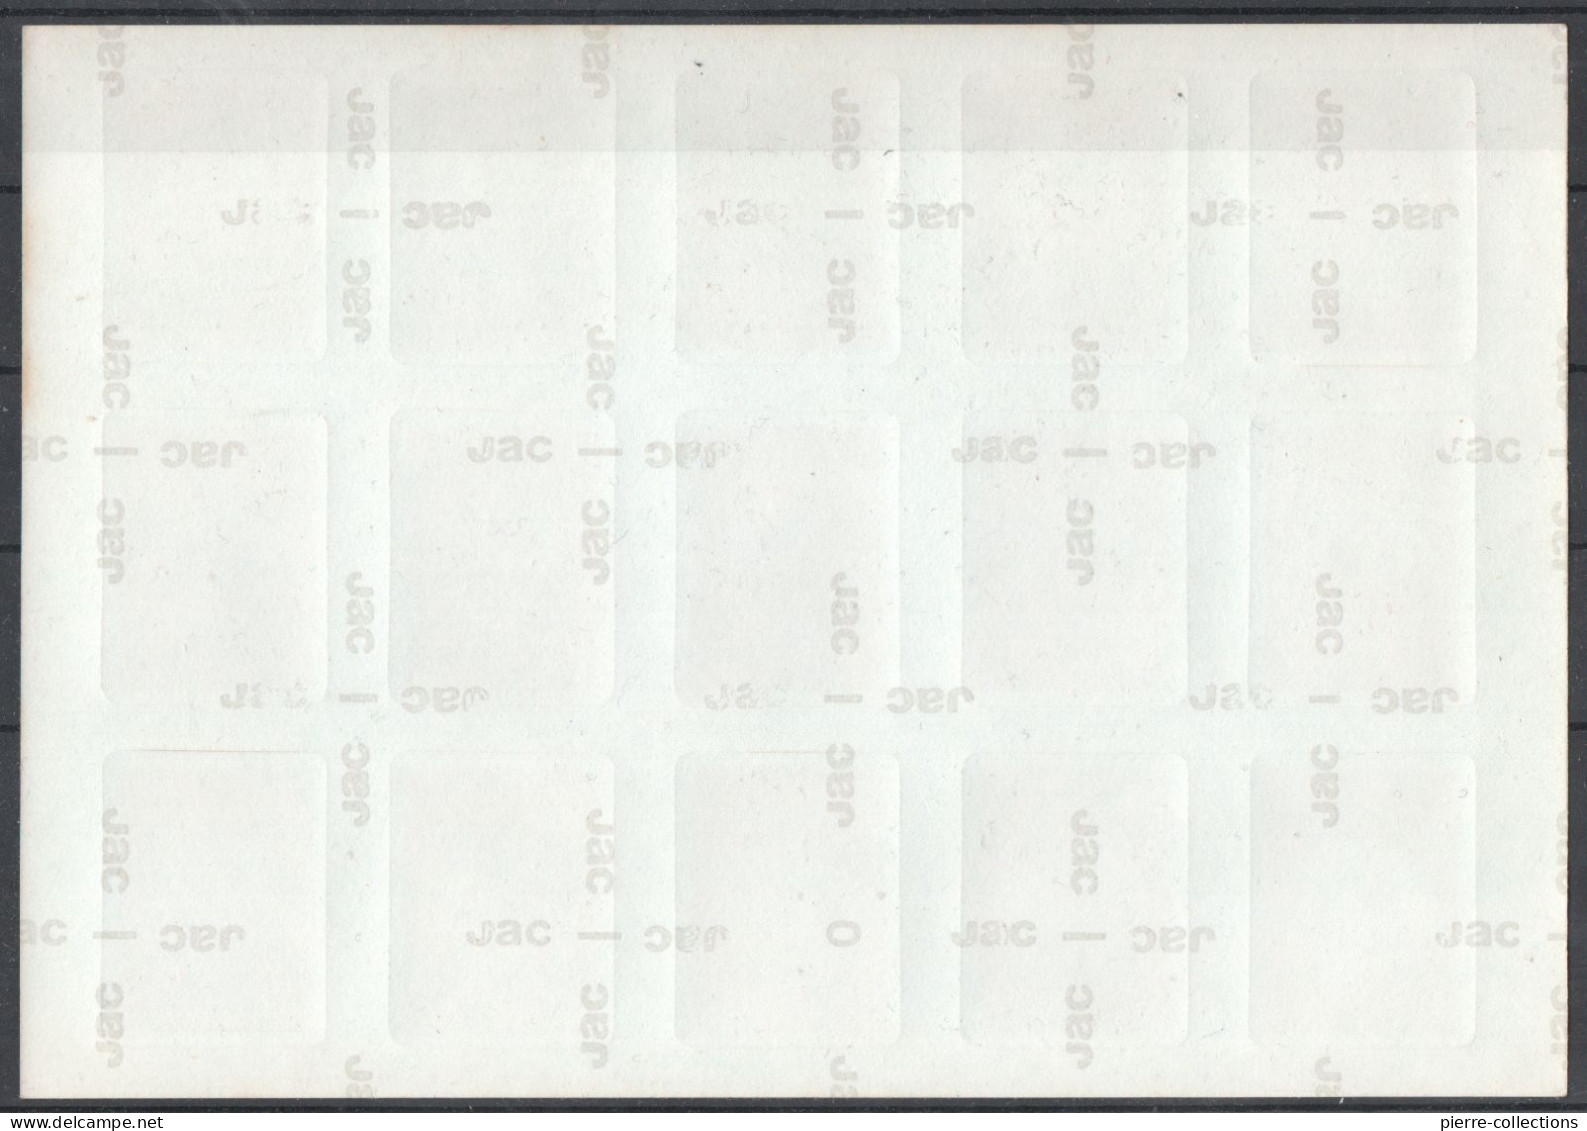 Feuille Complète De 15 Vignettes - Exposition Philexfrance 11-21 Juin 1982 à Paris La Défense - RARE - Briefmarkenmessen